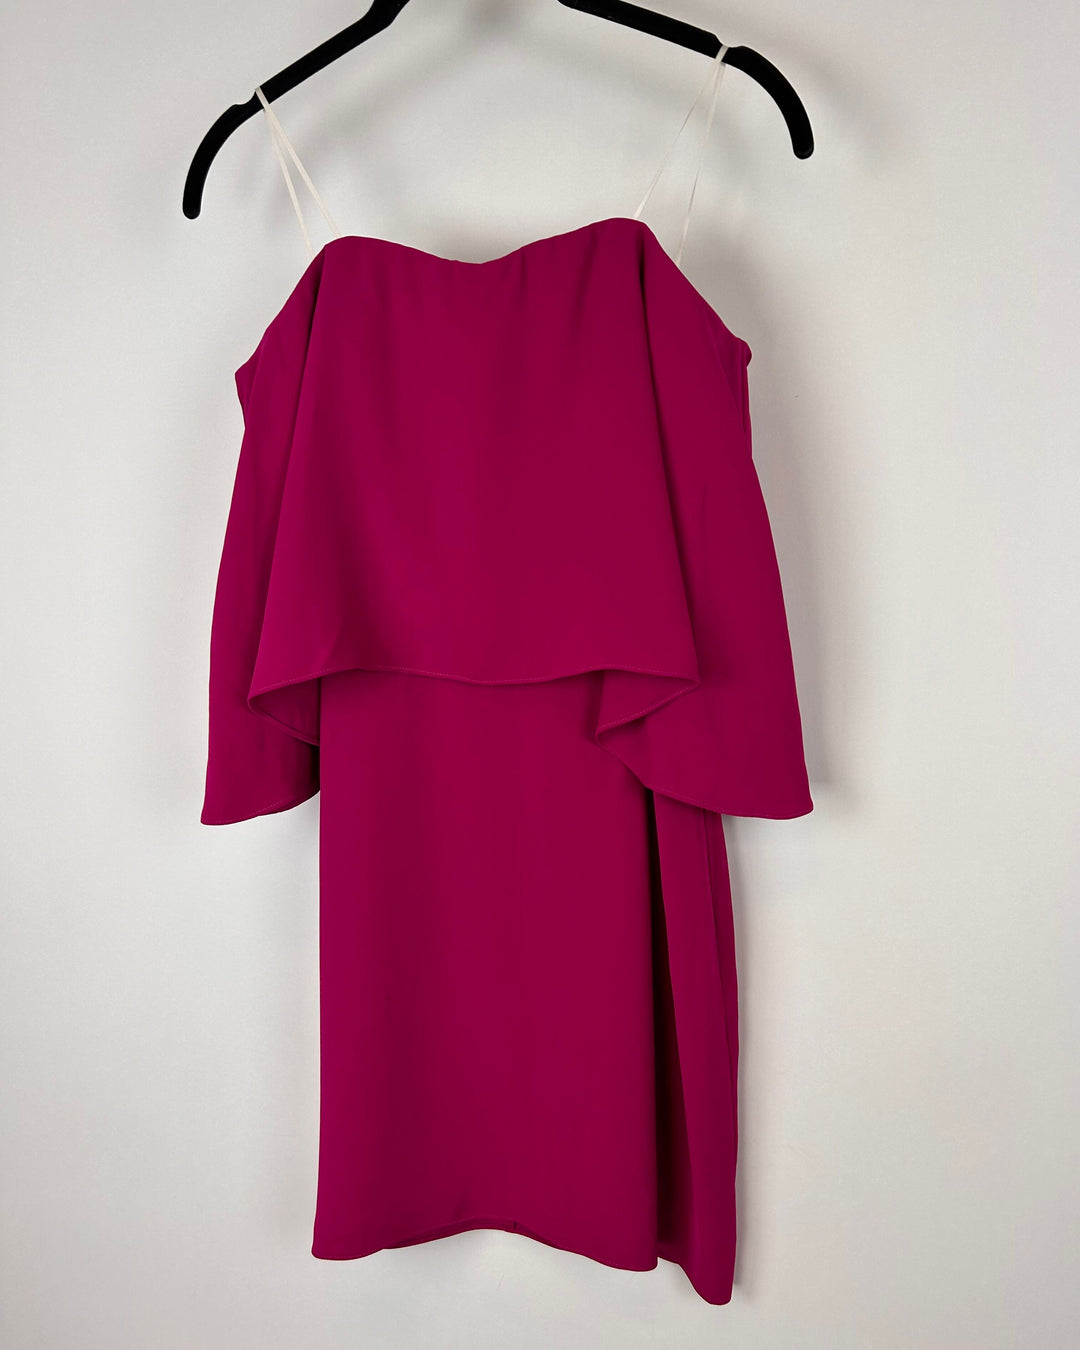 Magenta Sleeveless Flowy Dress - Size 4/6